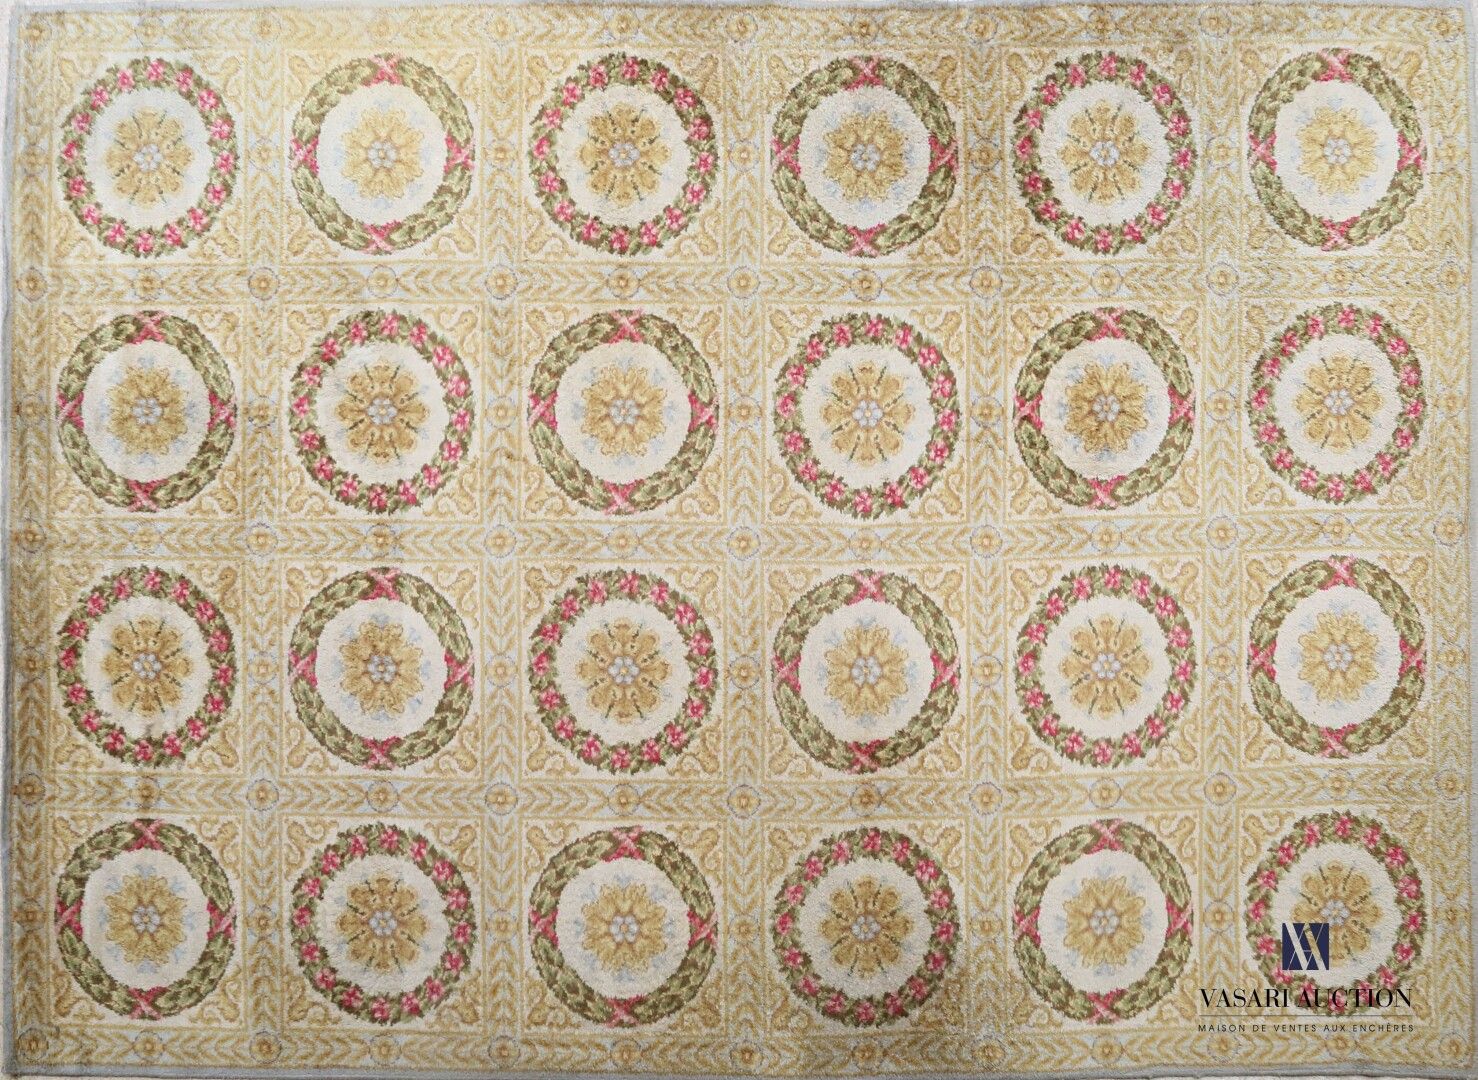 Null 羊毛机械地毯，在黄色背景上装饰有二十四个月桂树花环的花扣。

帝国风格

(磨损和颜色褪色)

197 x 295 cm